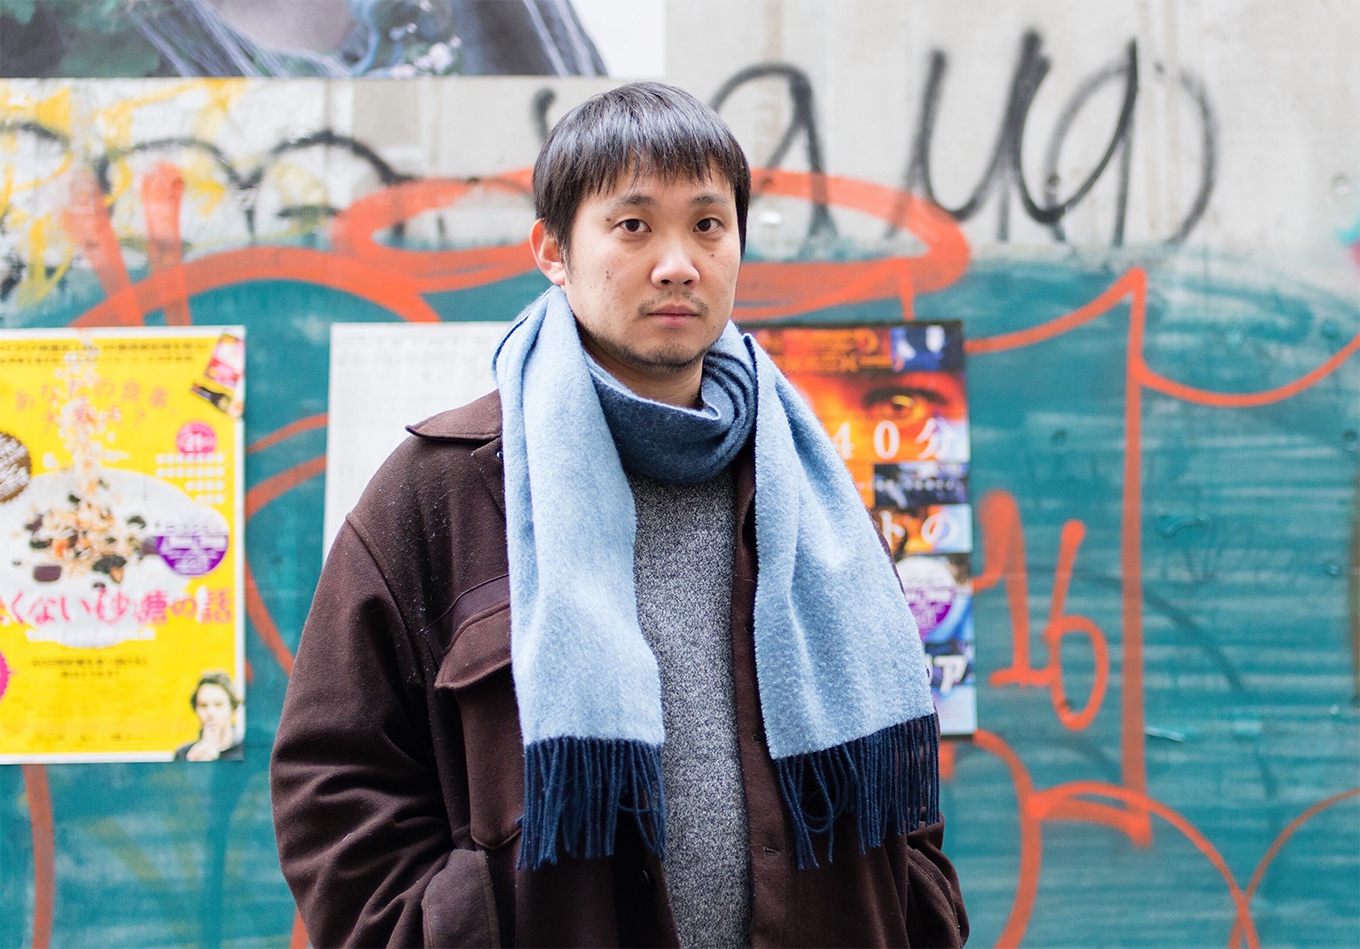 濱口竜介監督の「偶然と想像」がベルリン国際映画祭で銀熊賞受賞

